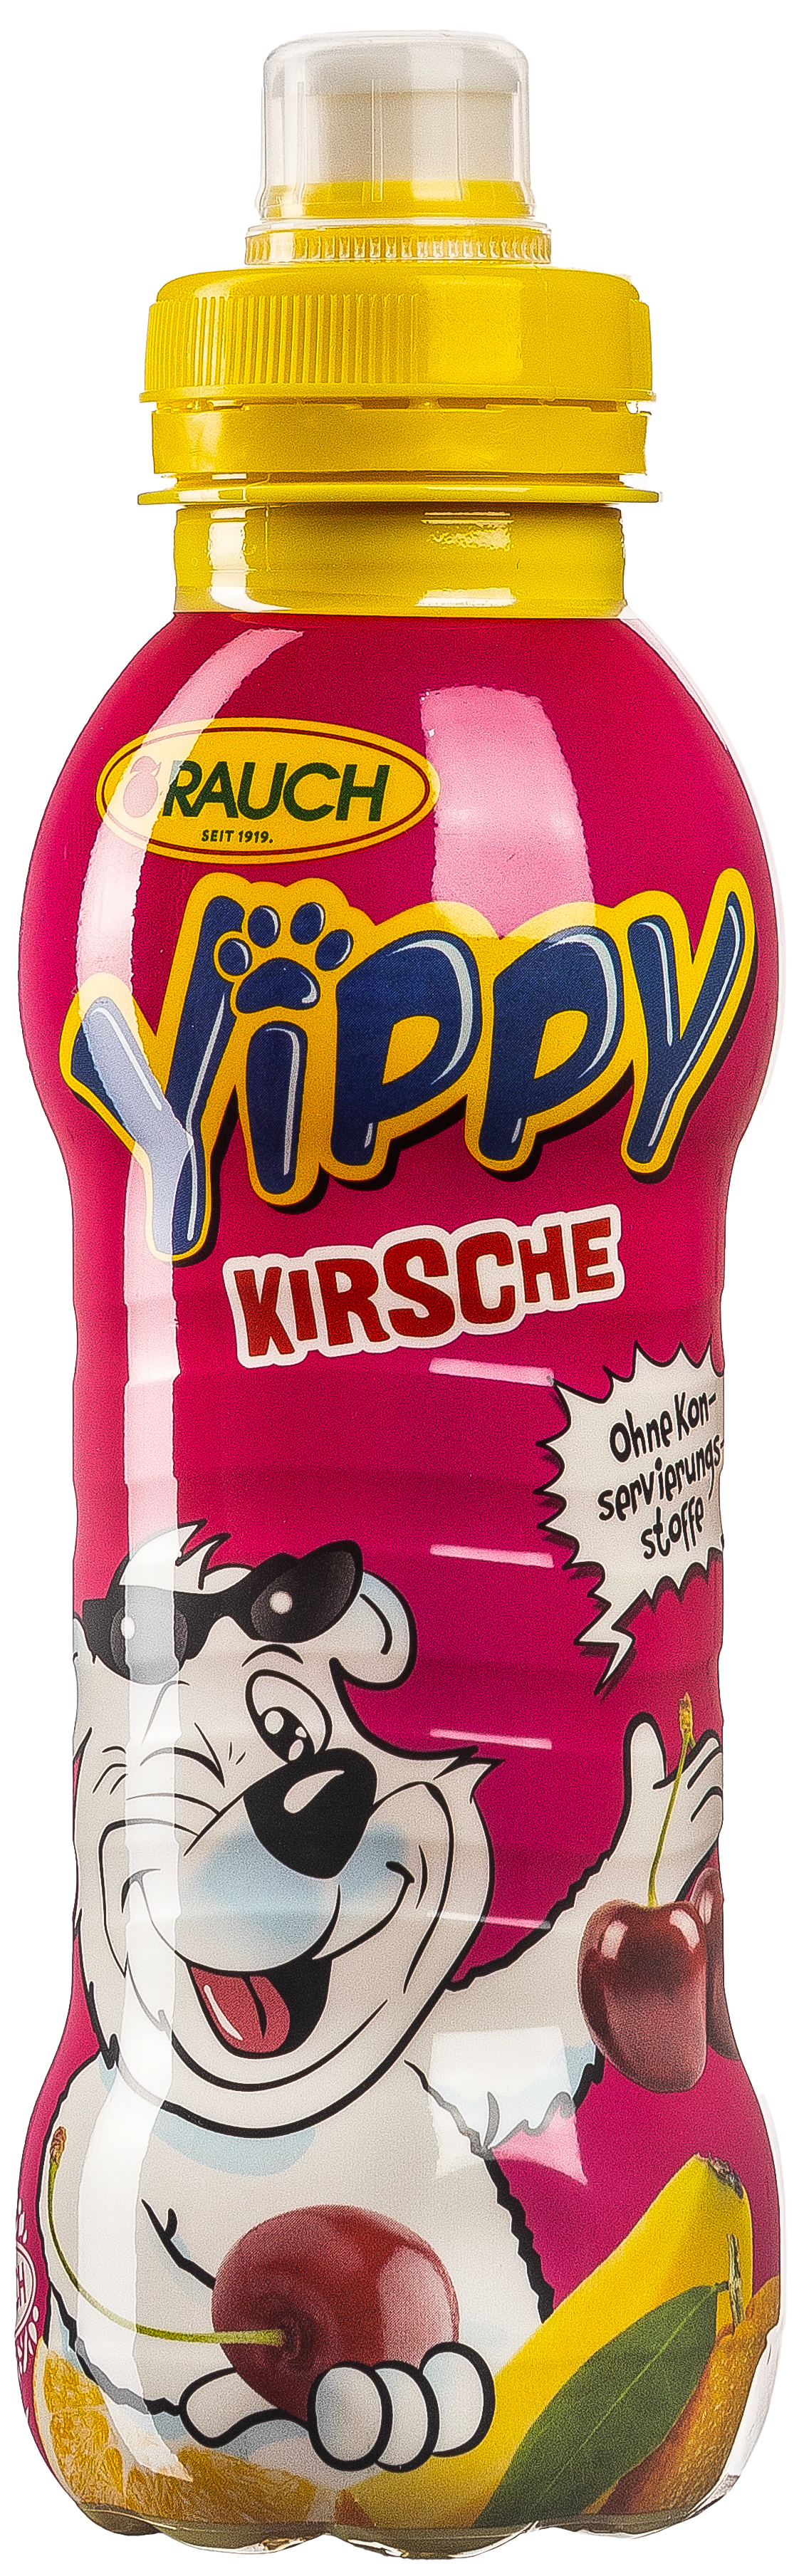 Yippy Kirsche 0,33L EINWEG